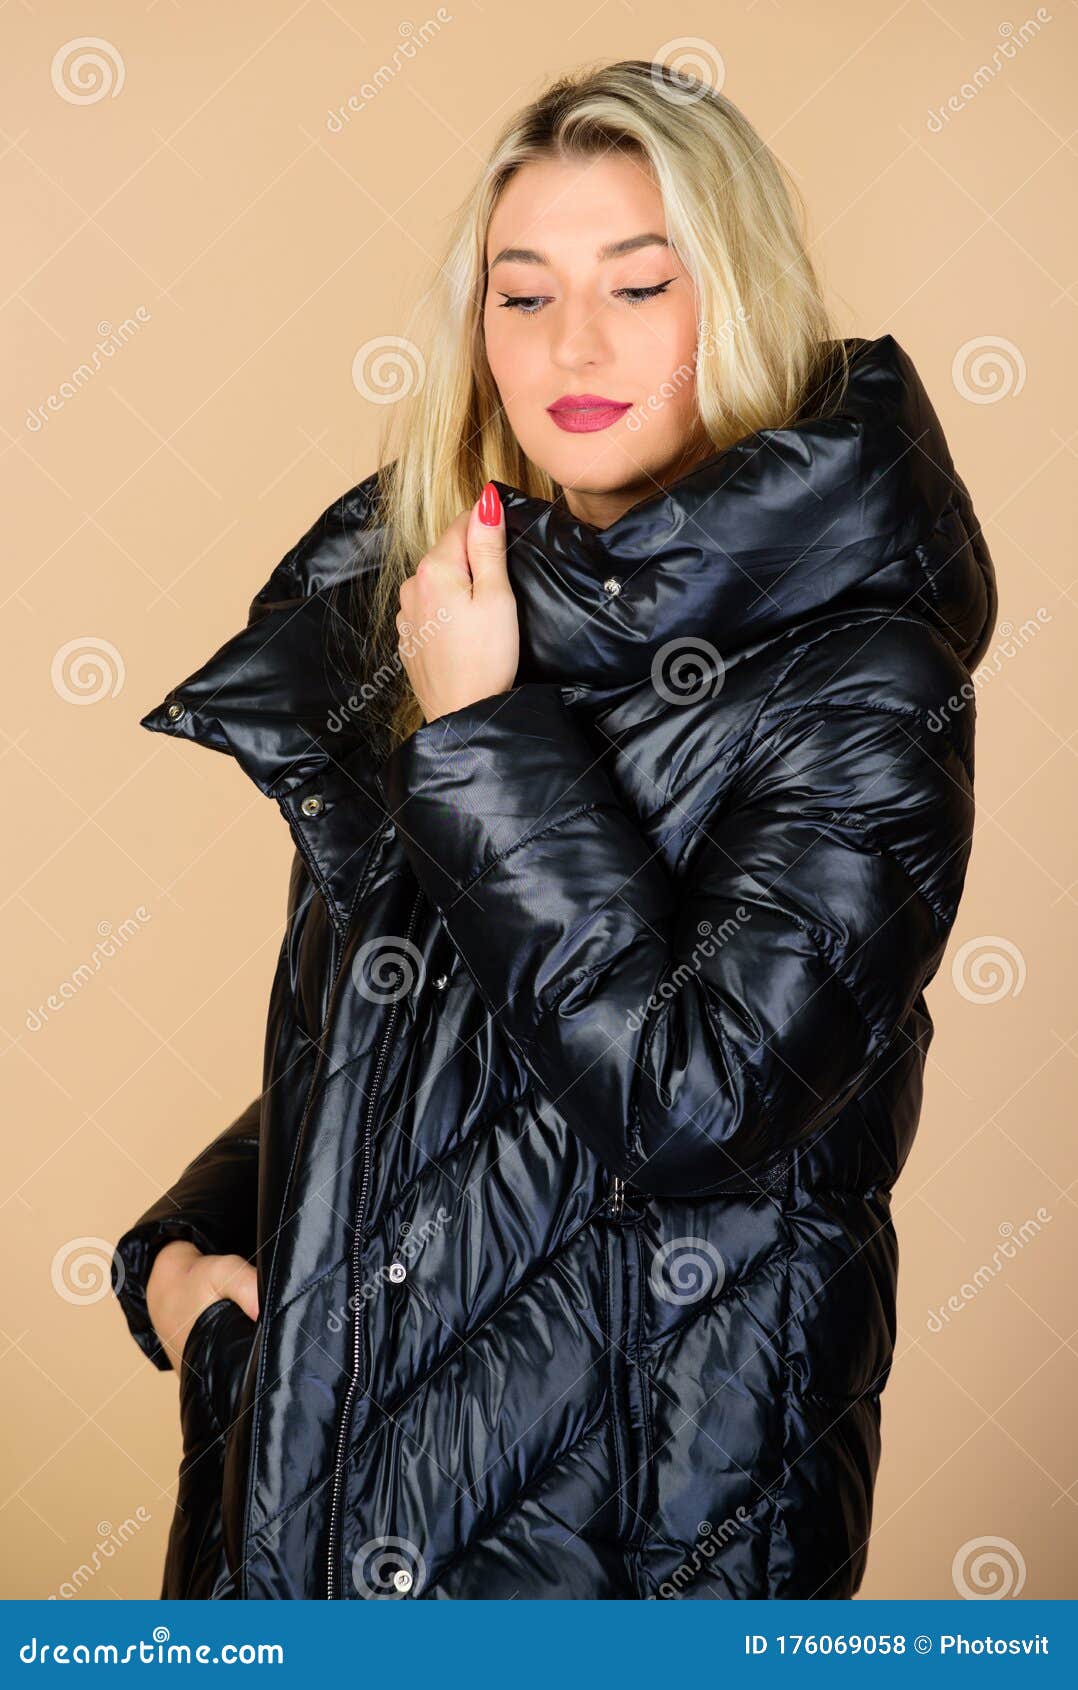 Bello Rubio De Moda. La Chica Disfruta Usando Una Chaqueta Brillante Con Abrigo. Camisa De Fuerza Cómoda. Volver a Entrar Foto de archivo - Imagen de ropas, pelo: 176069058